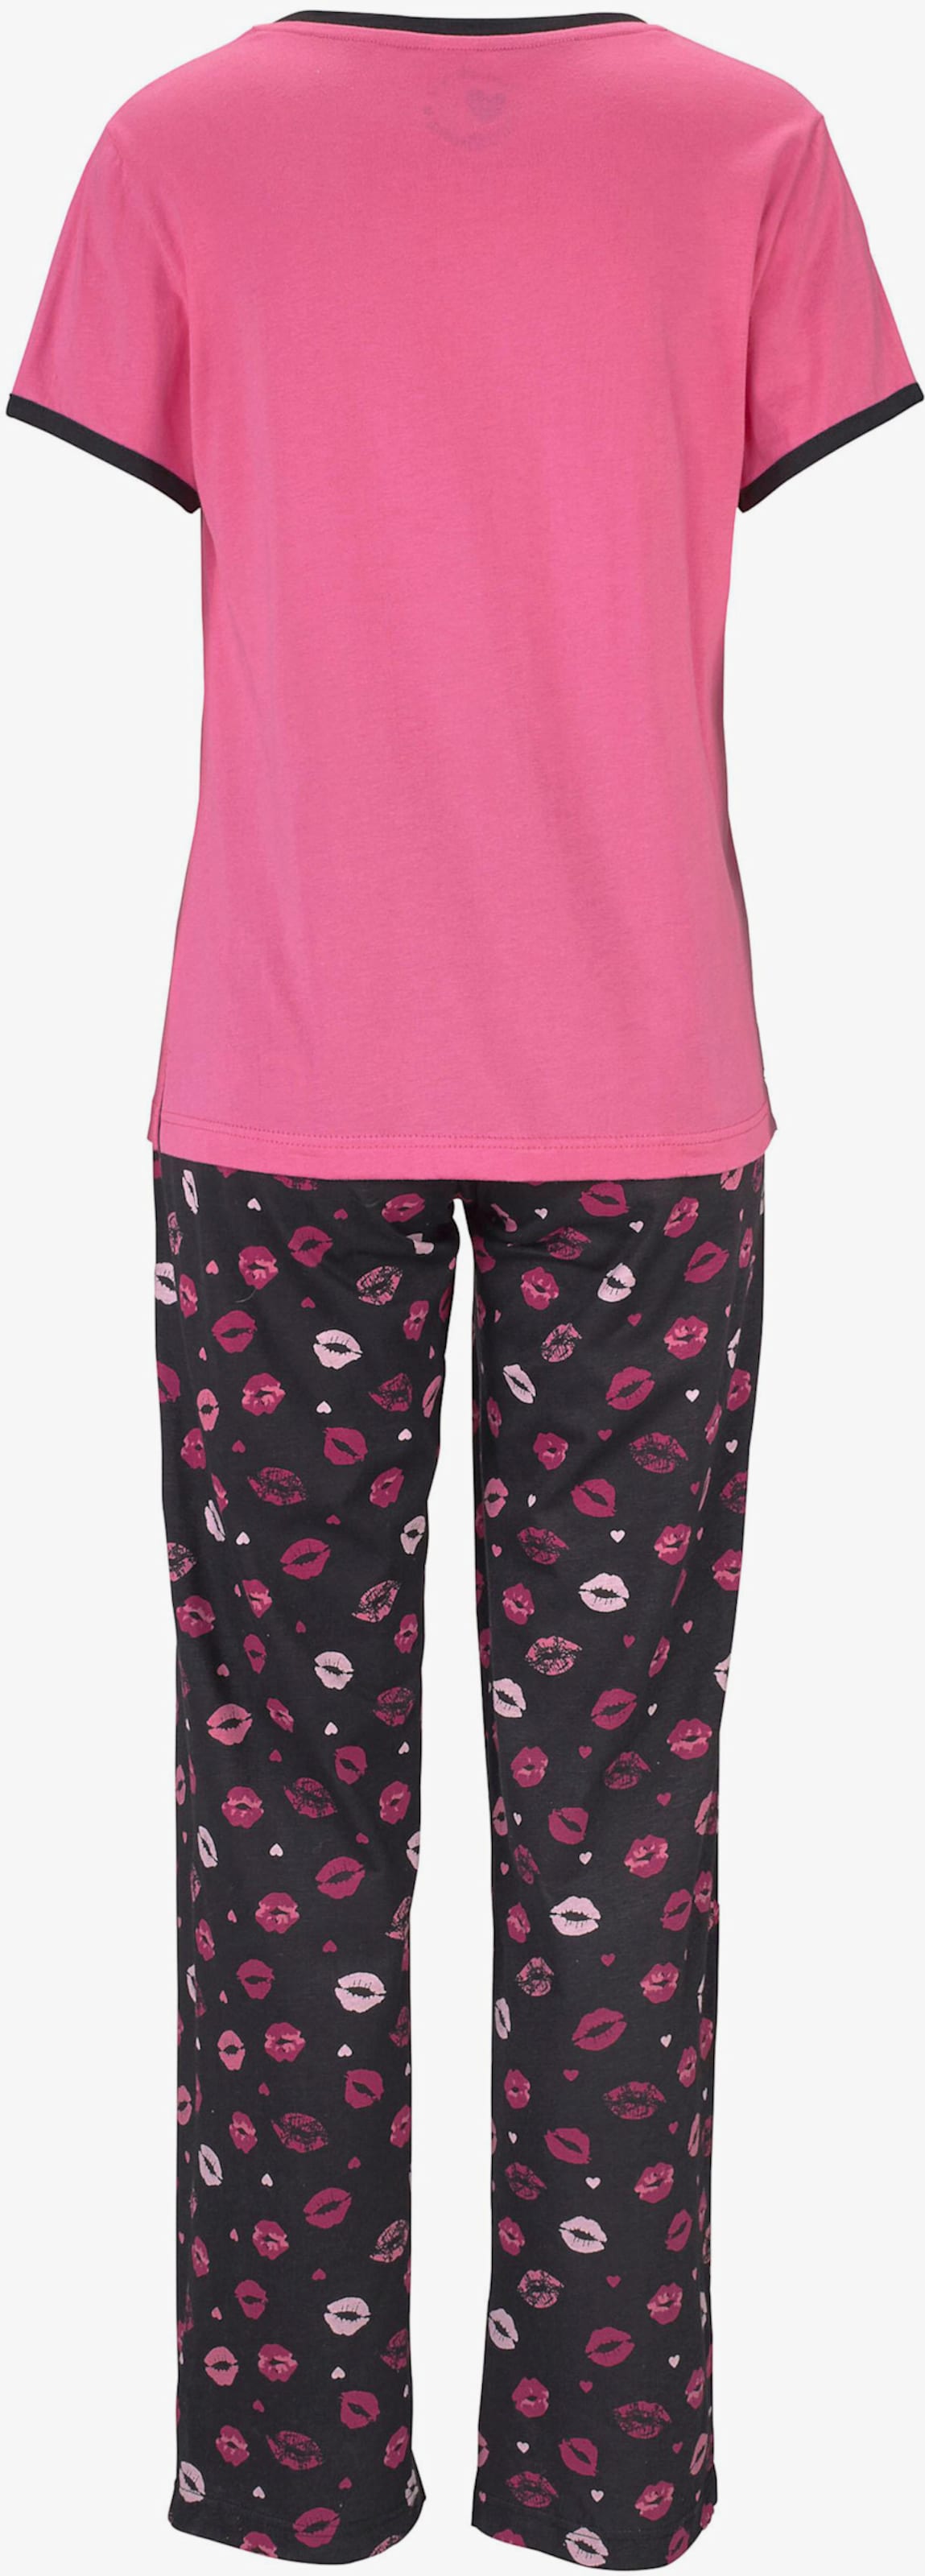 Vivance Dreams Pyjama - pink-schwarz-gemustert